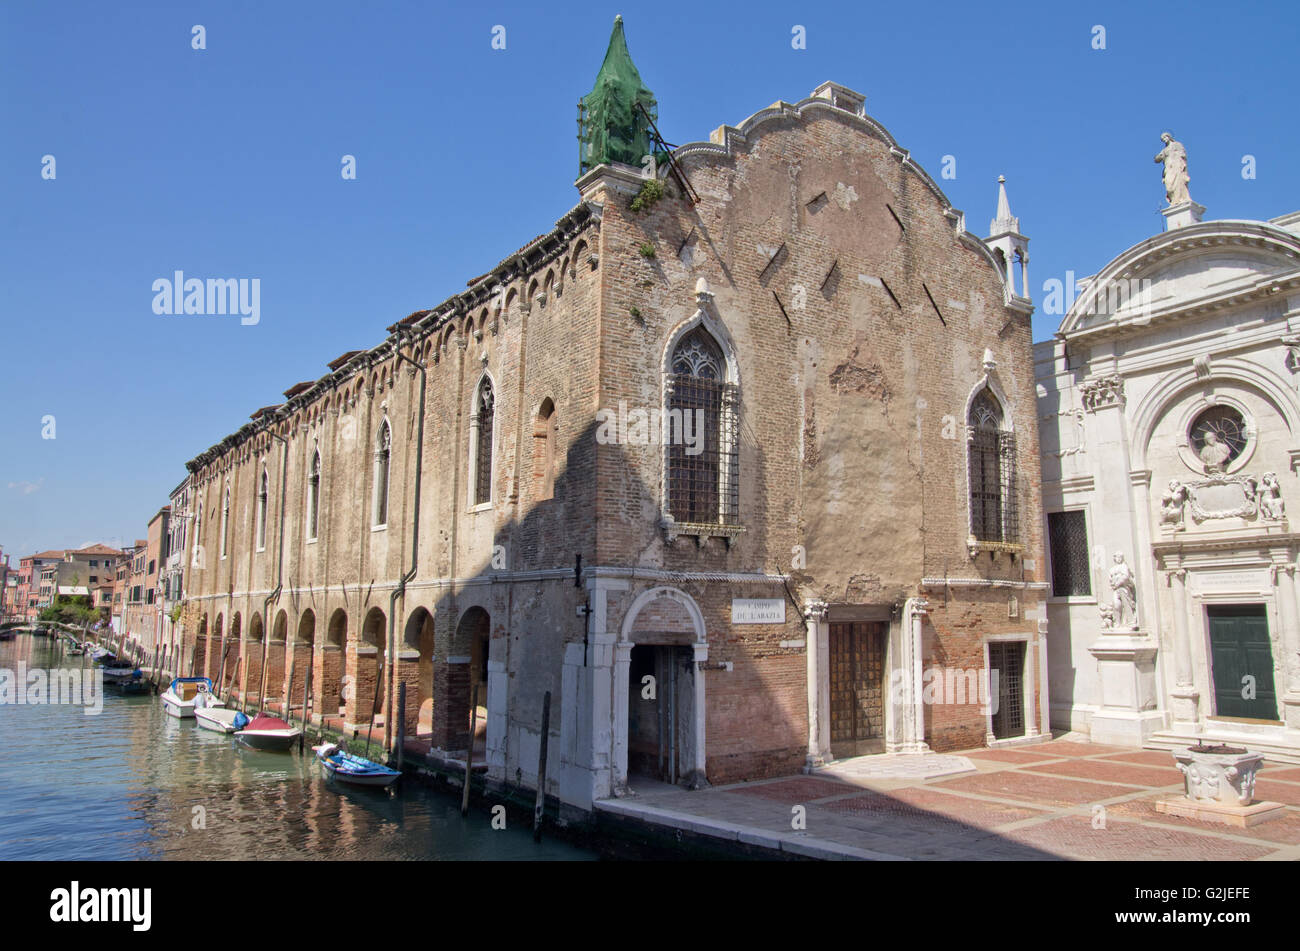 Scuola Vecchia della Misericordia and the church of Santa Maria della Misericordia Stock Photo